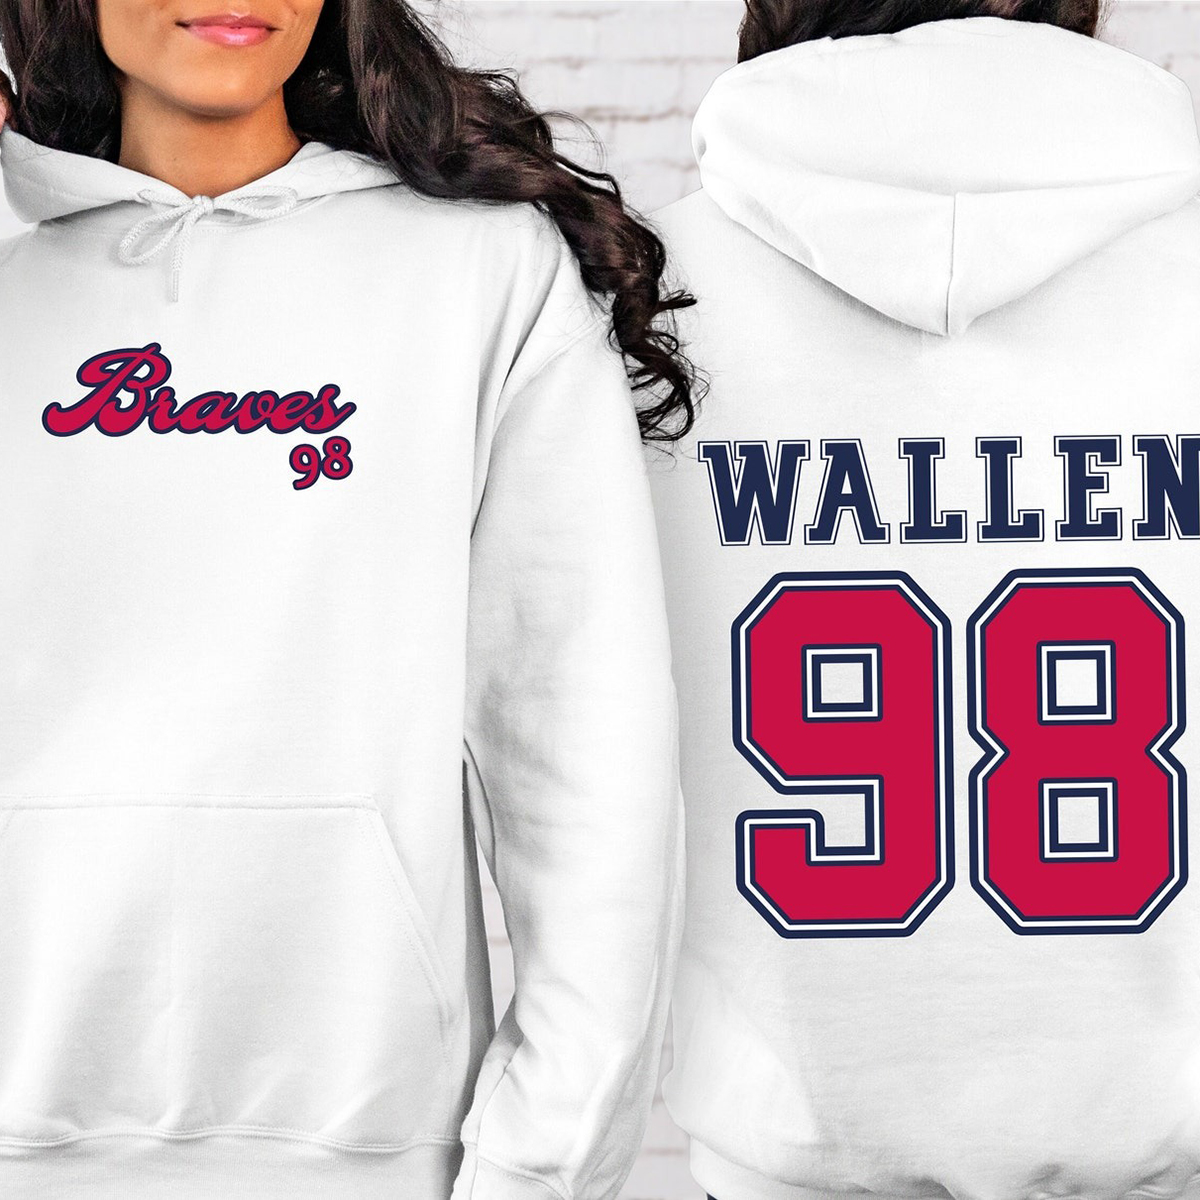 Wallen 98 Braves Crewneck Sweatshirt, T-shirt, Hoodie - Trending T ...